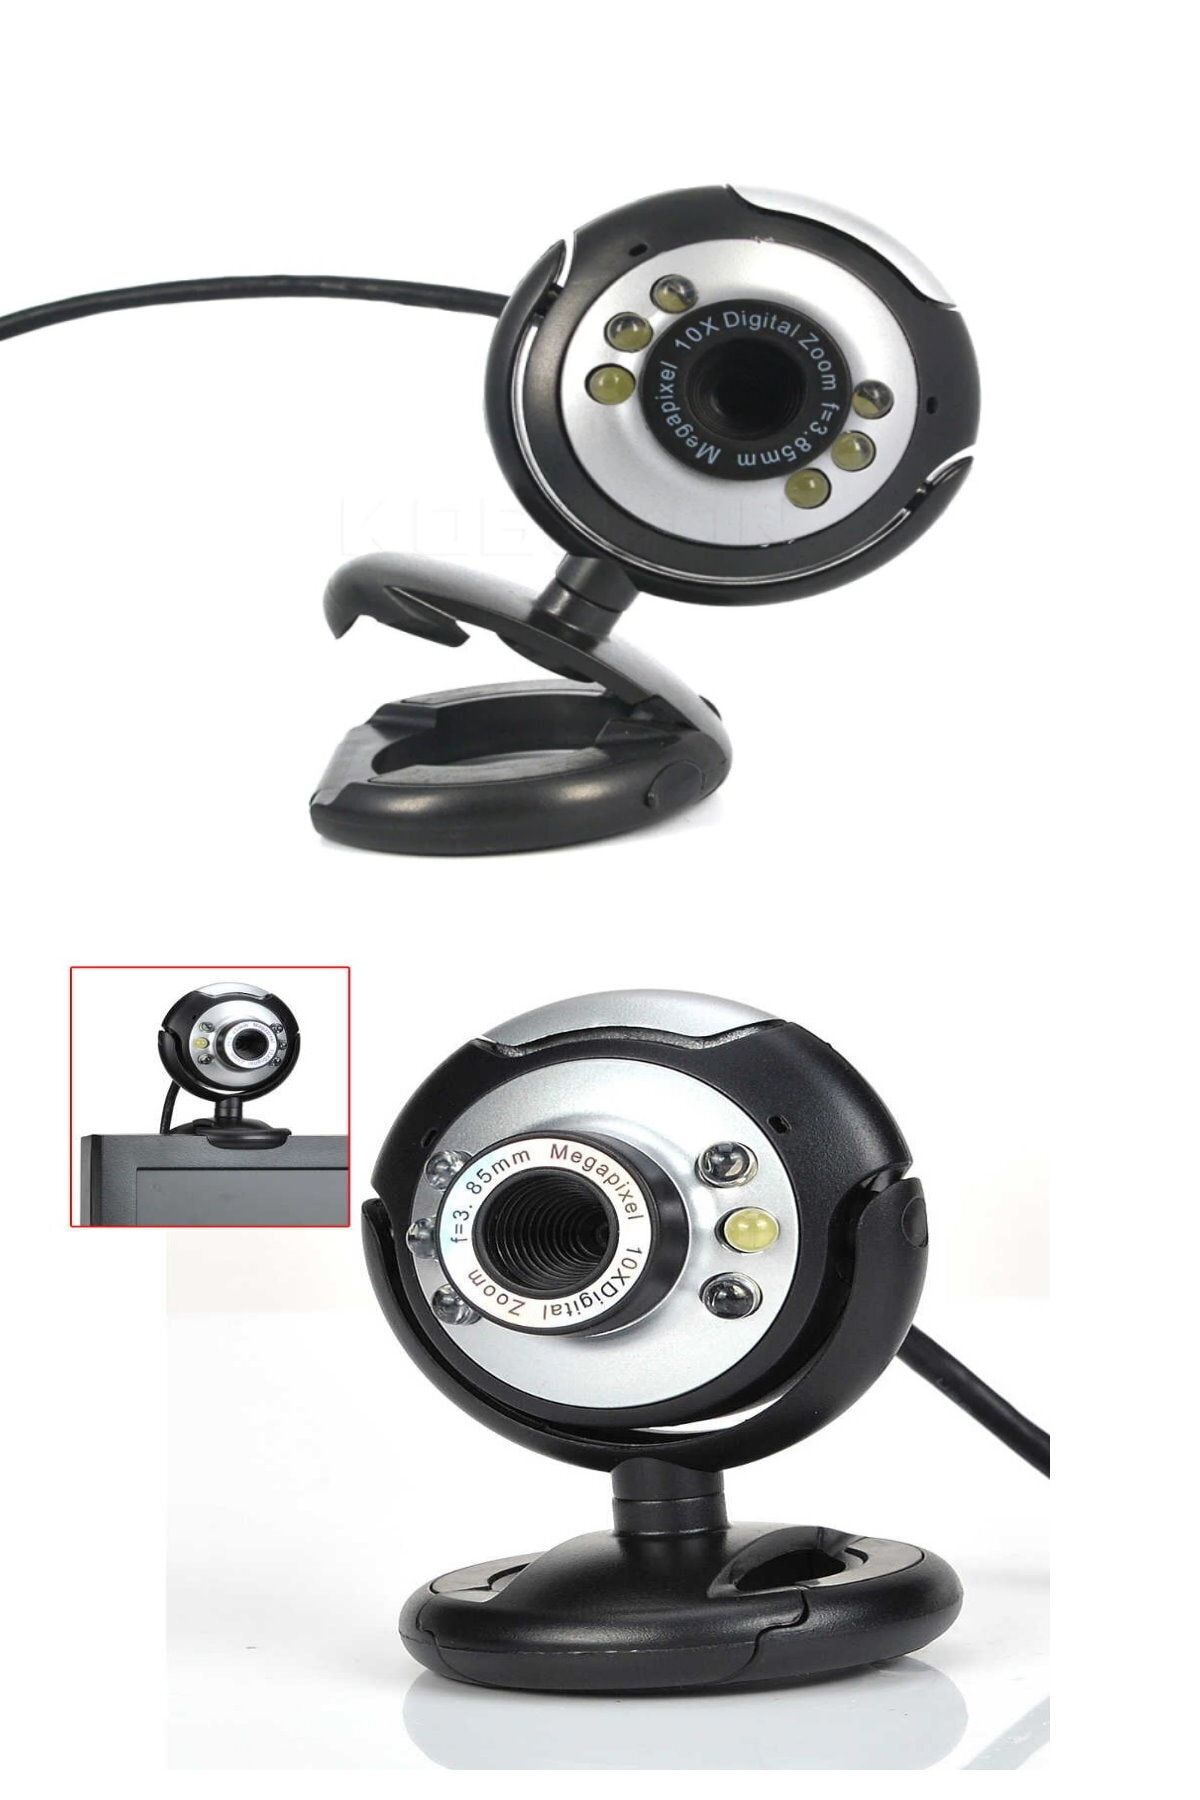 esmelen Dizüstü Ve Masaüstü Uyumlu 6 Adet Led Işıklı Kolay Kurulum Tak Çalıştır Webcam Mikrofonlu Webcam